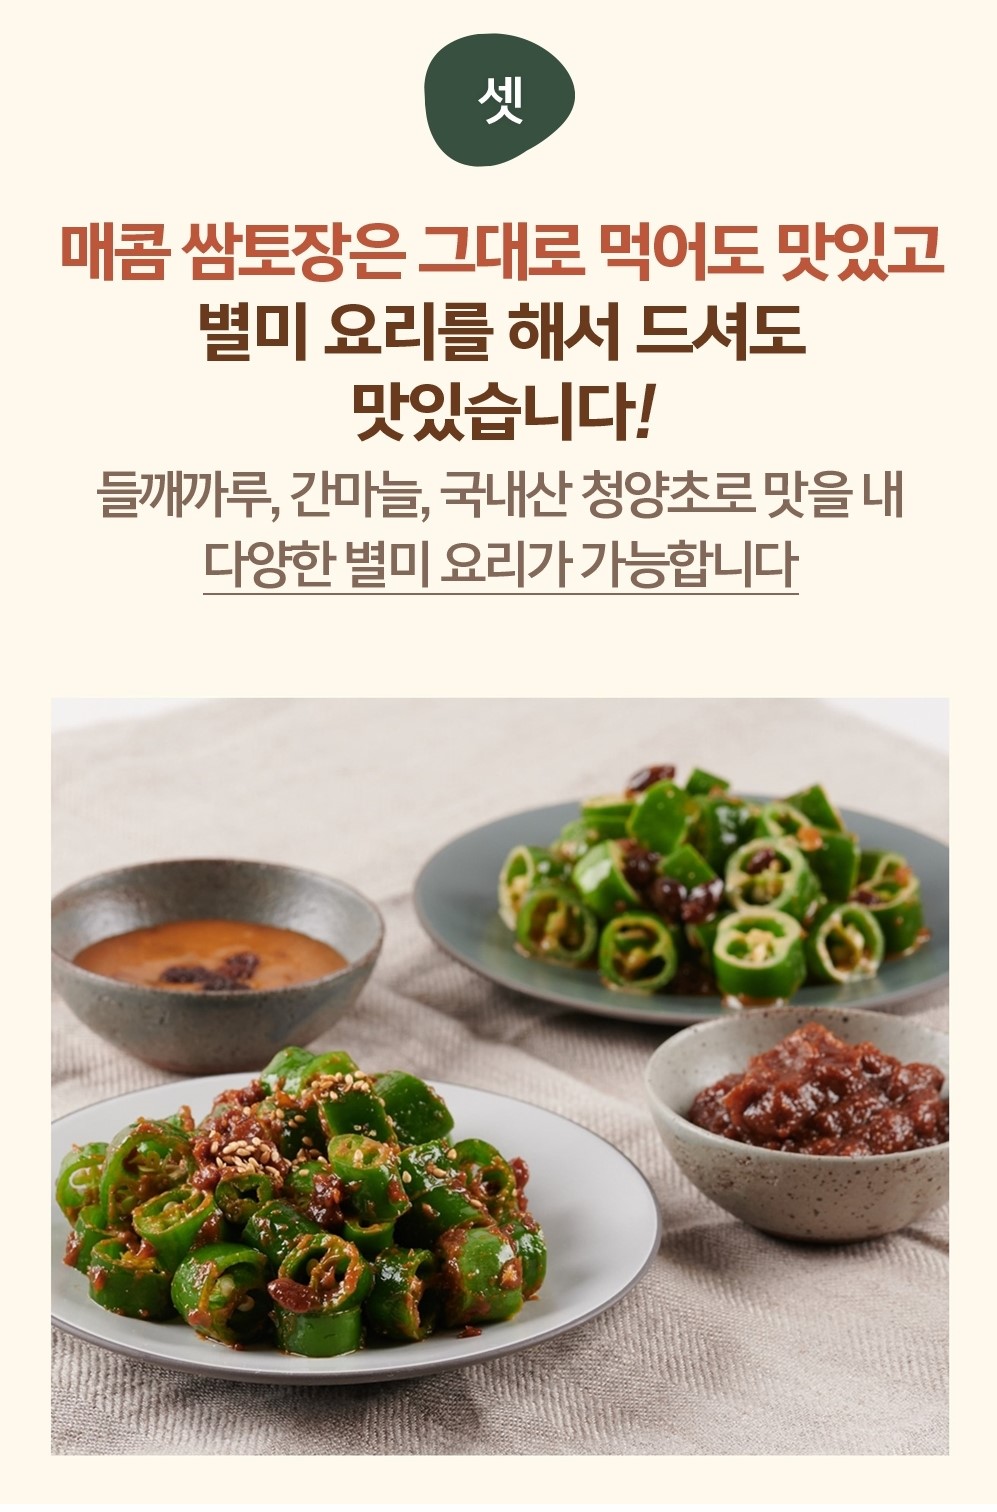 韓國食品-[膳府] Tujang 辣包肉醬 170g